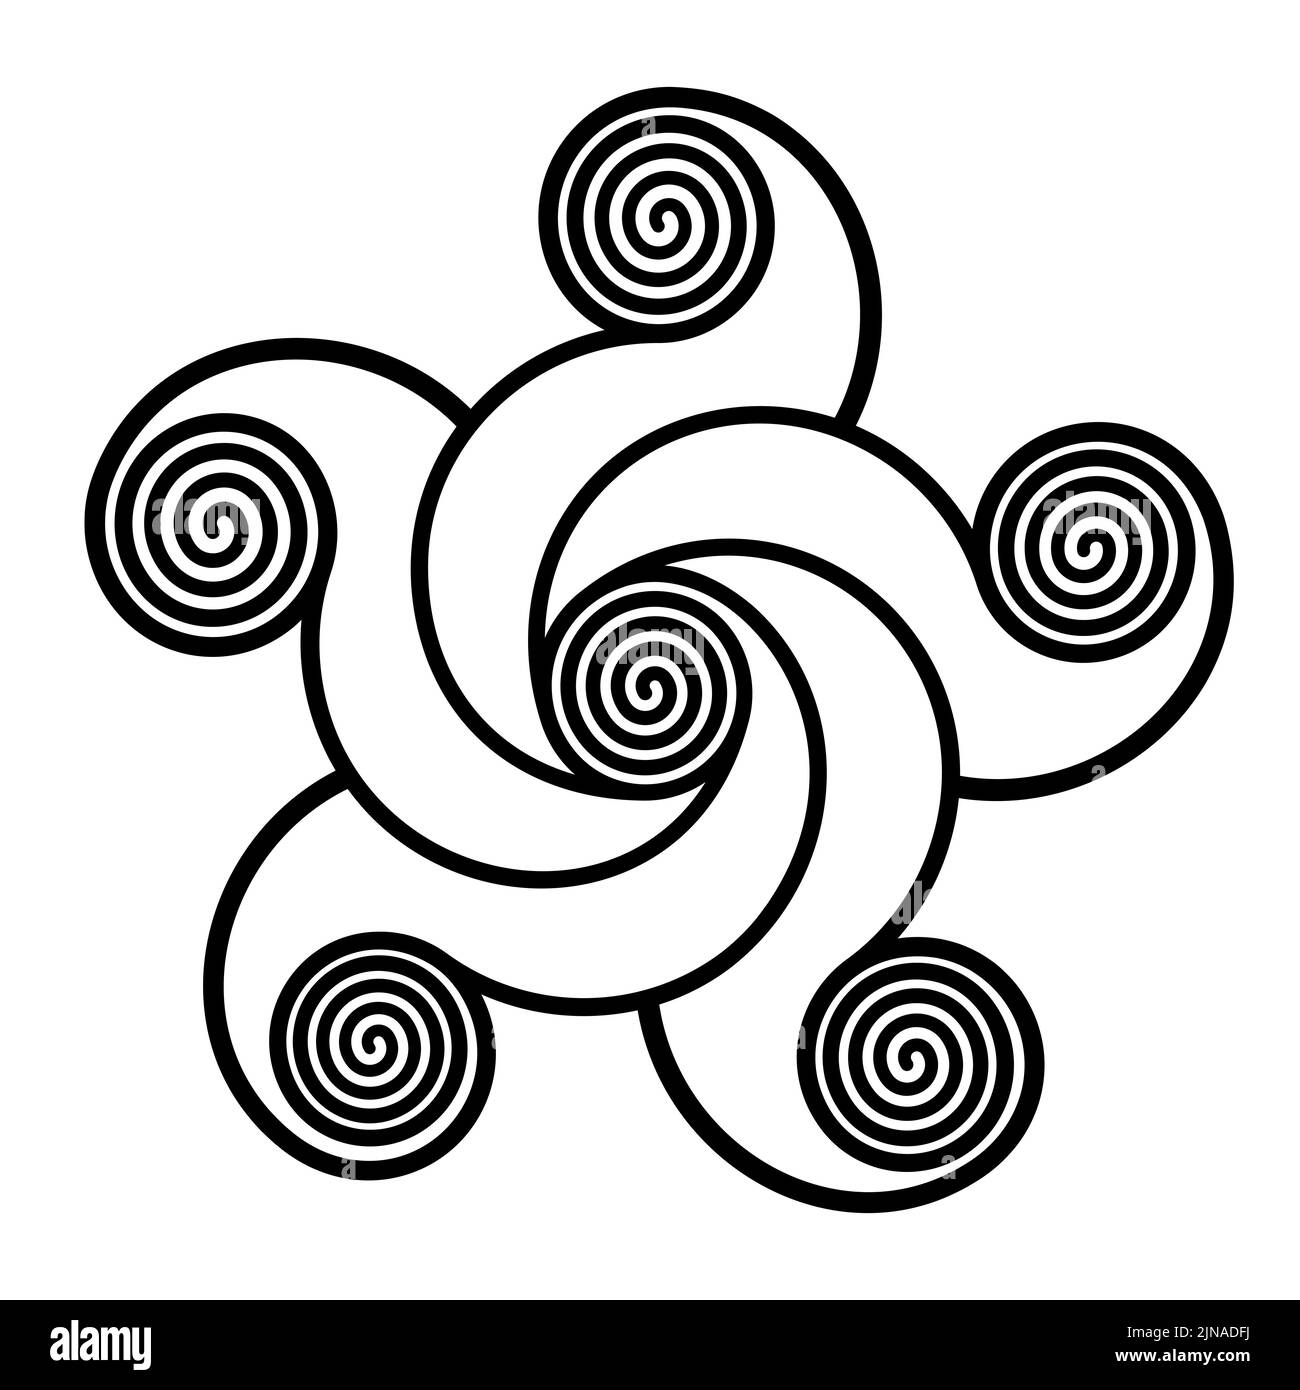 Spirales formant une étoile en forme de pentagramme. Étoile à cinq pointes, en spirales, reliée par des lignes courbes à une spirale au centre. Banque D'Images